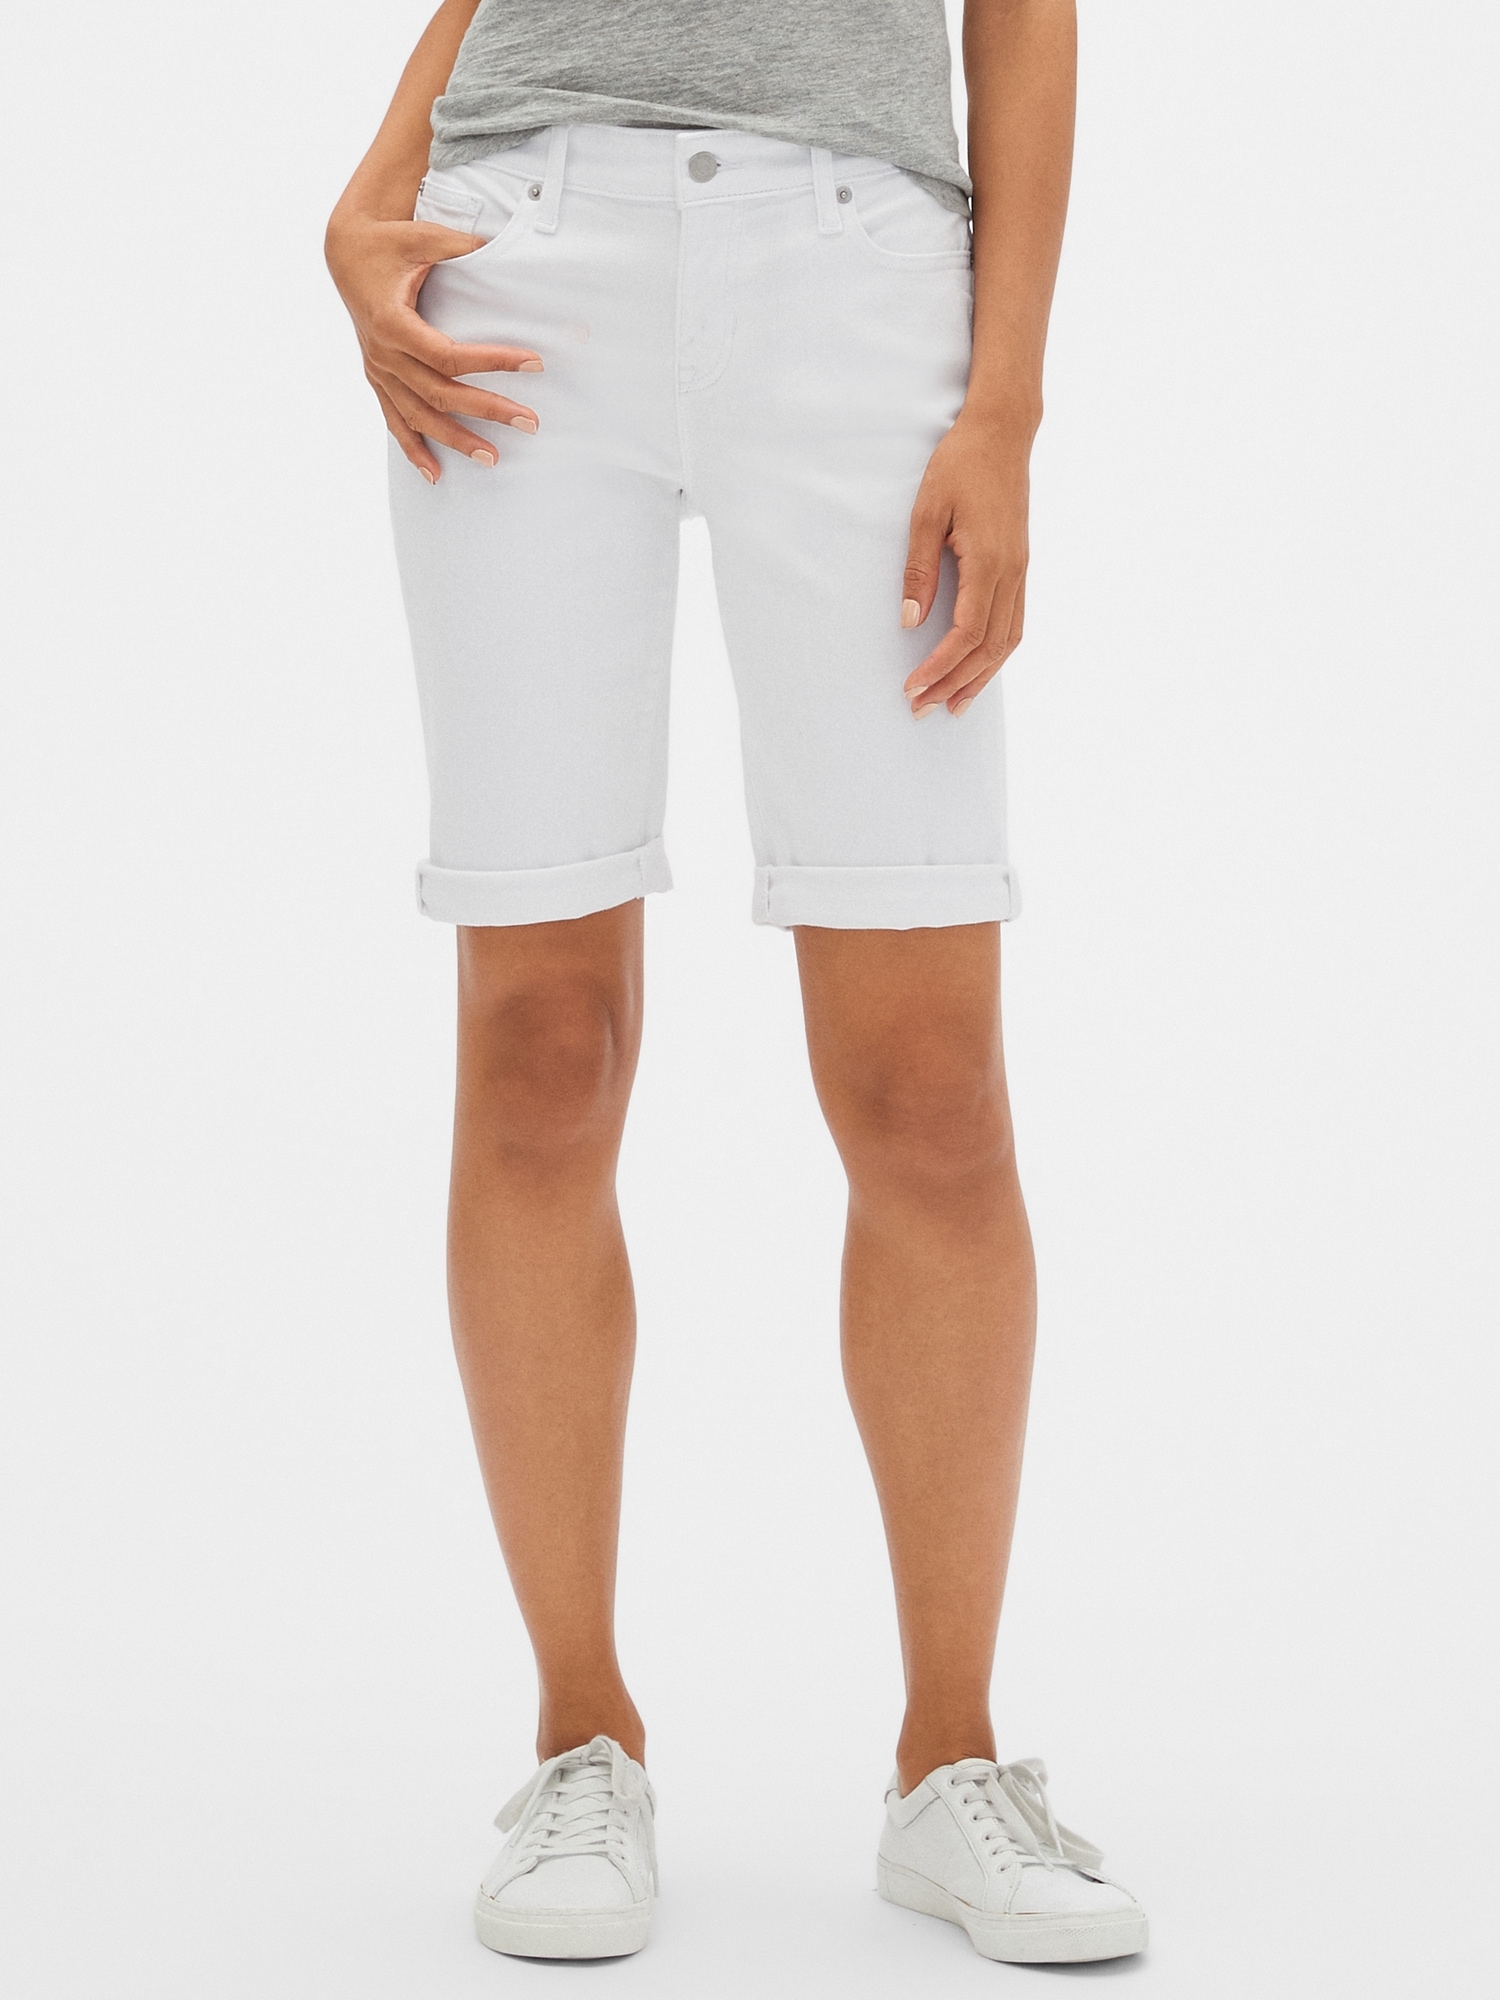 gap white denim shorts